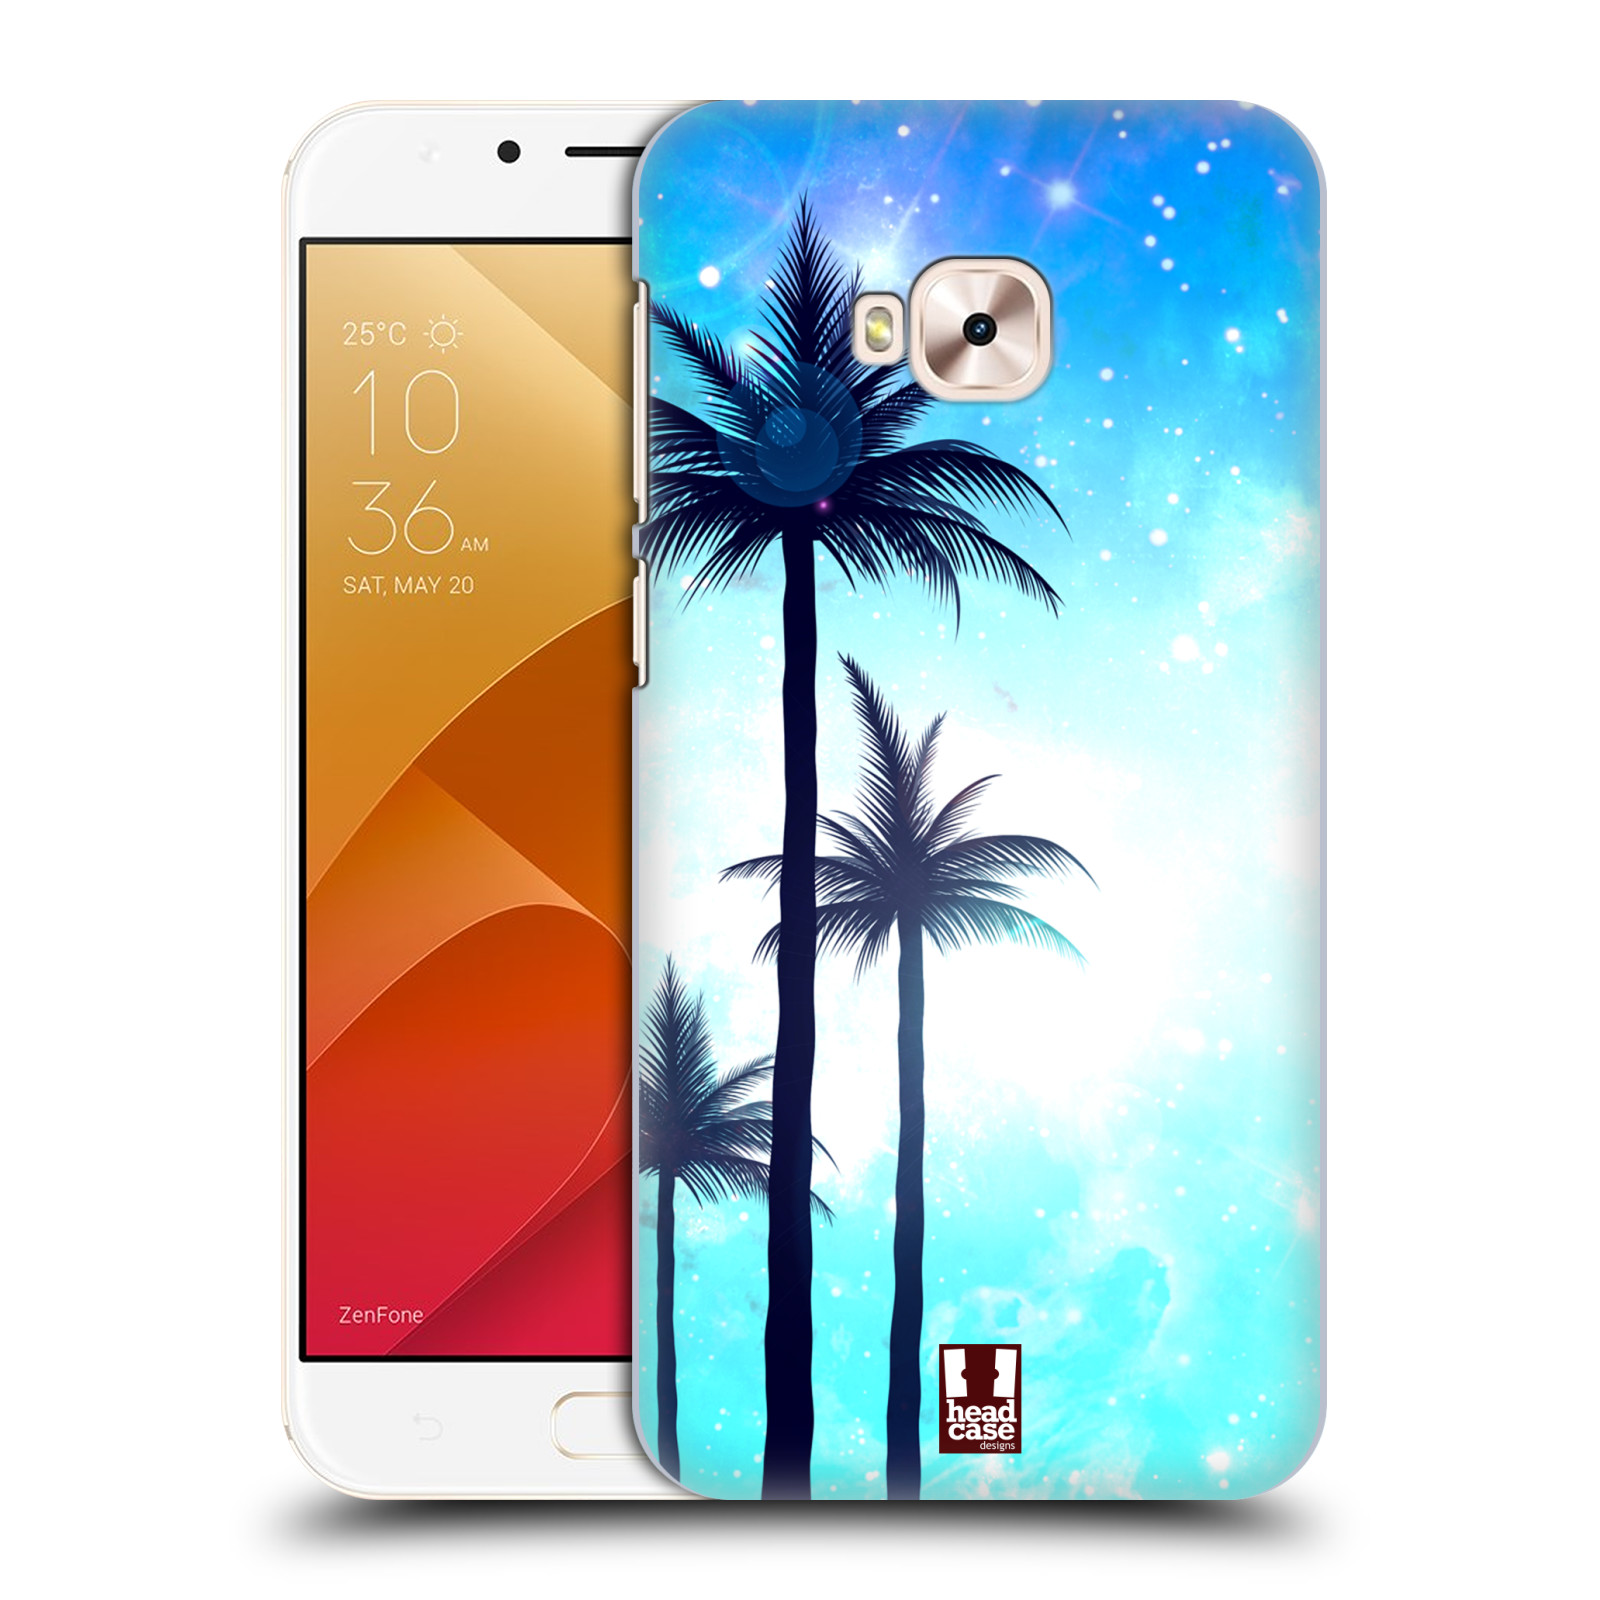 HEAD CASE plastový obal na mobil Asus Zenfone 4 Selfie Pro ZD552KL vzor Kreslený motiv silueta moře a palmy MODRÁ